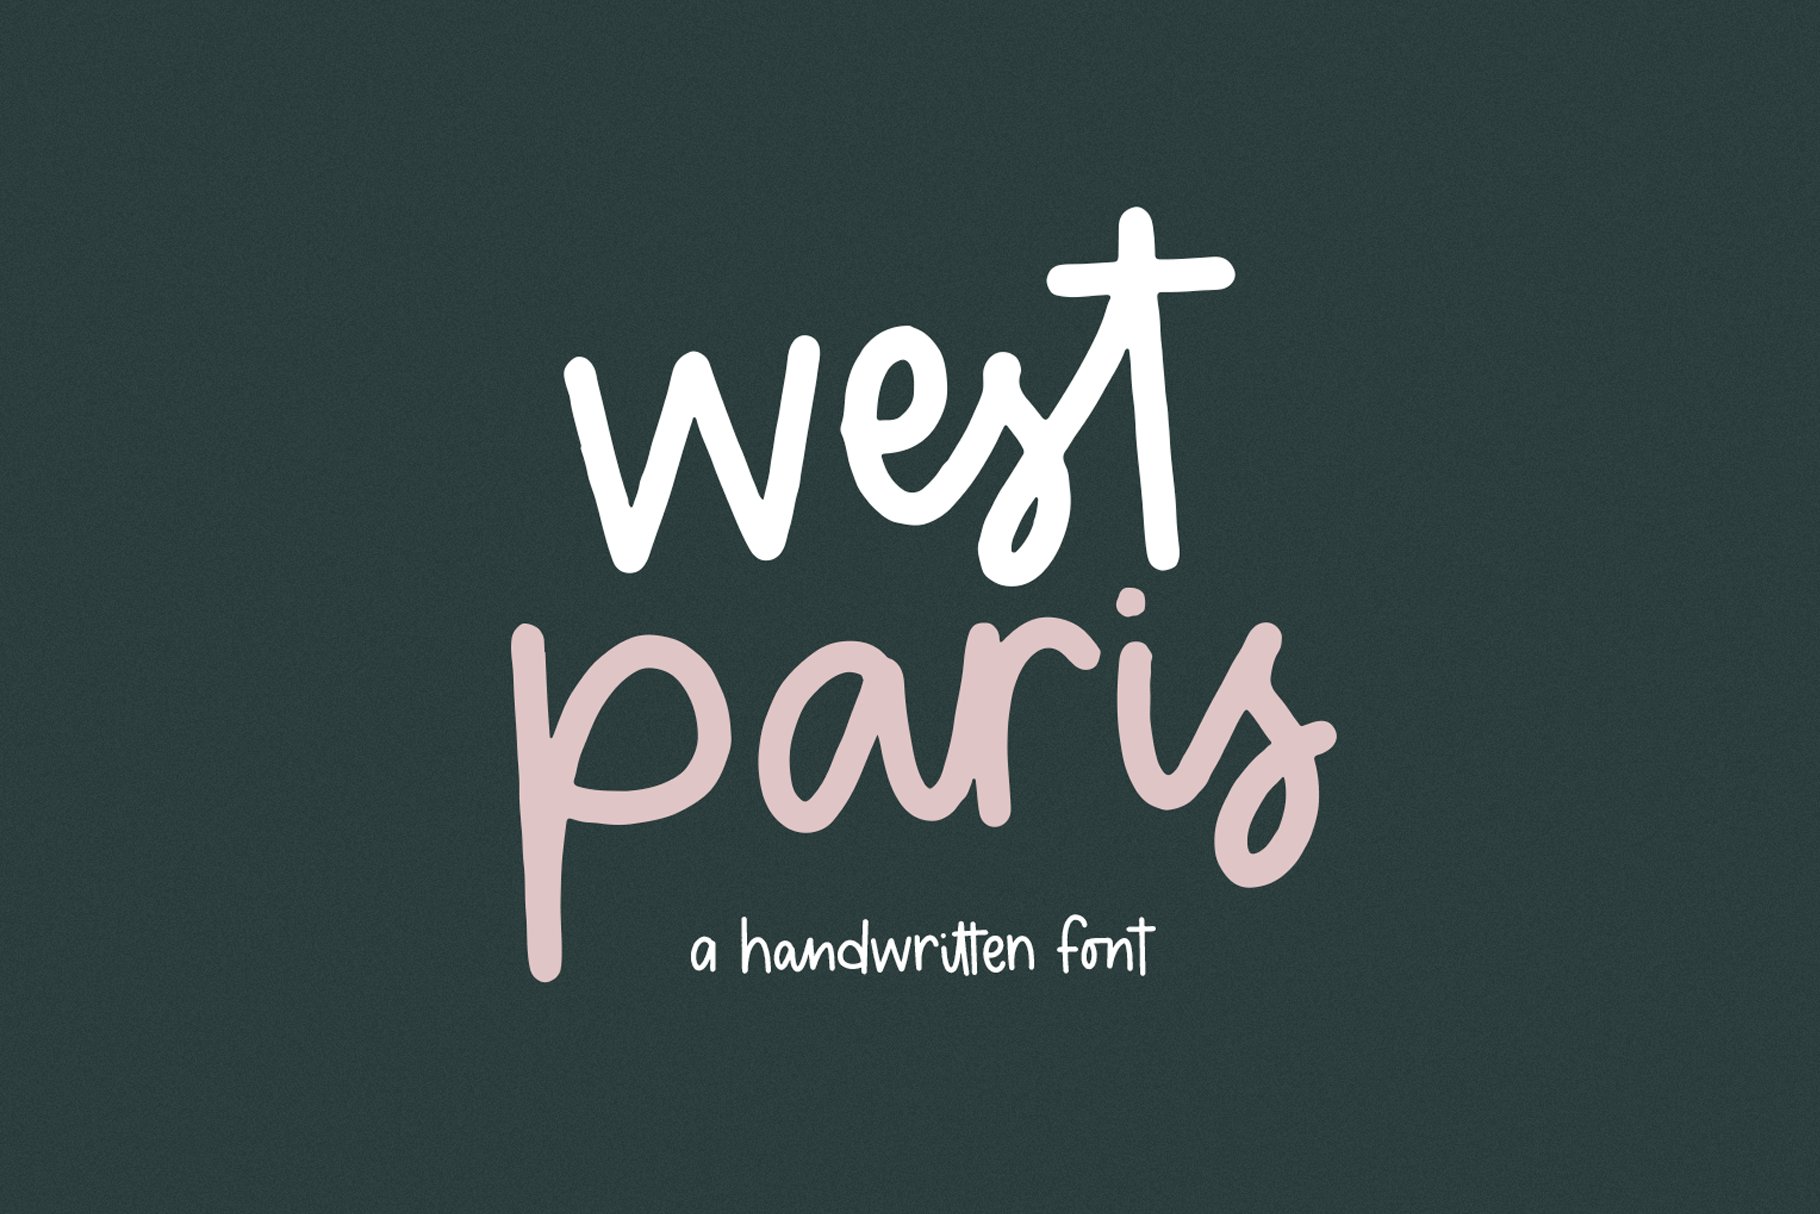 West Paris | Handwritten Font cover image.